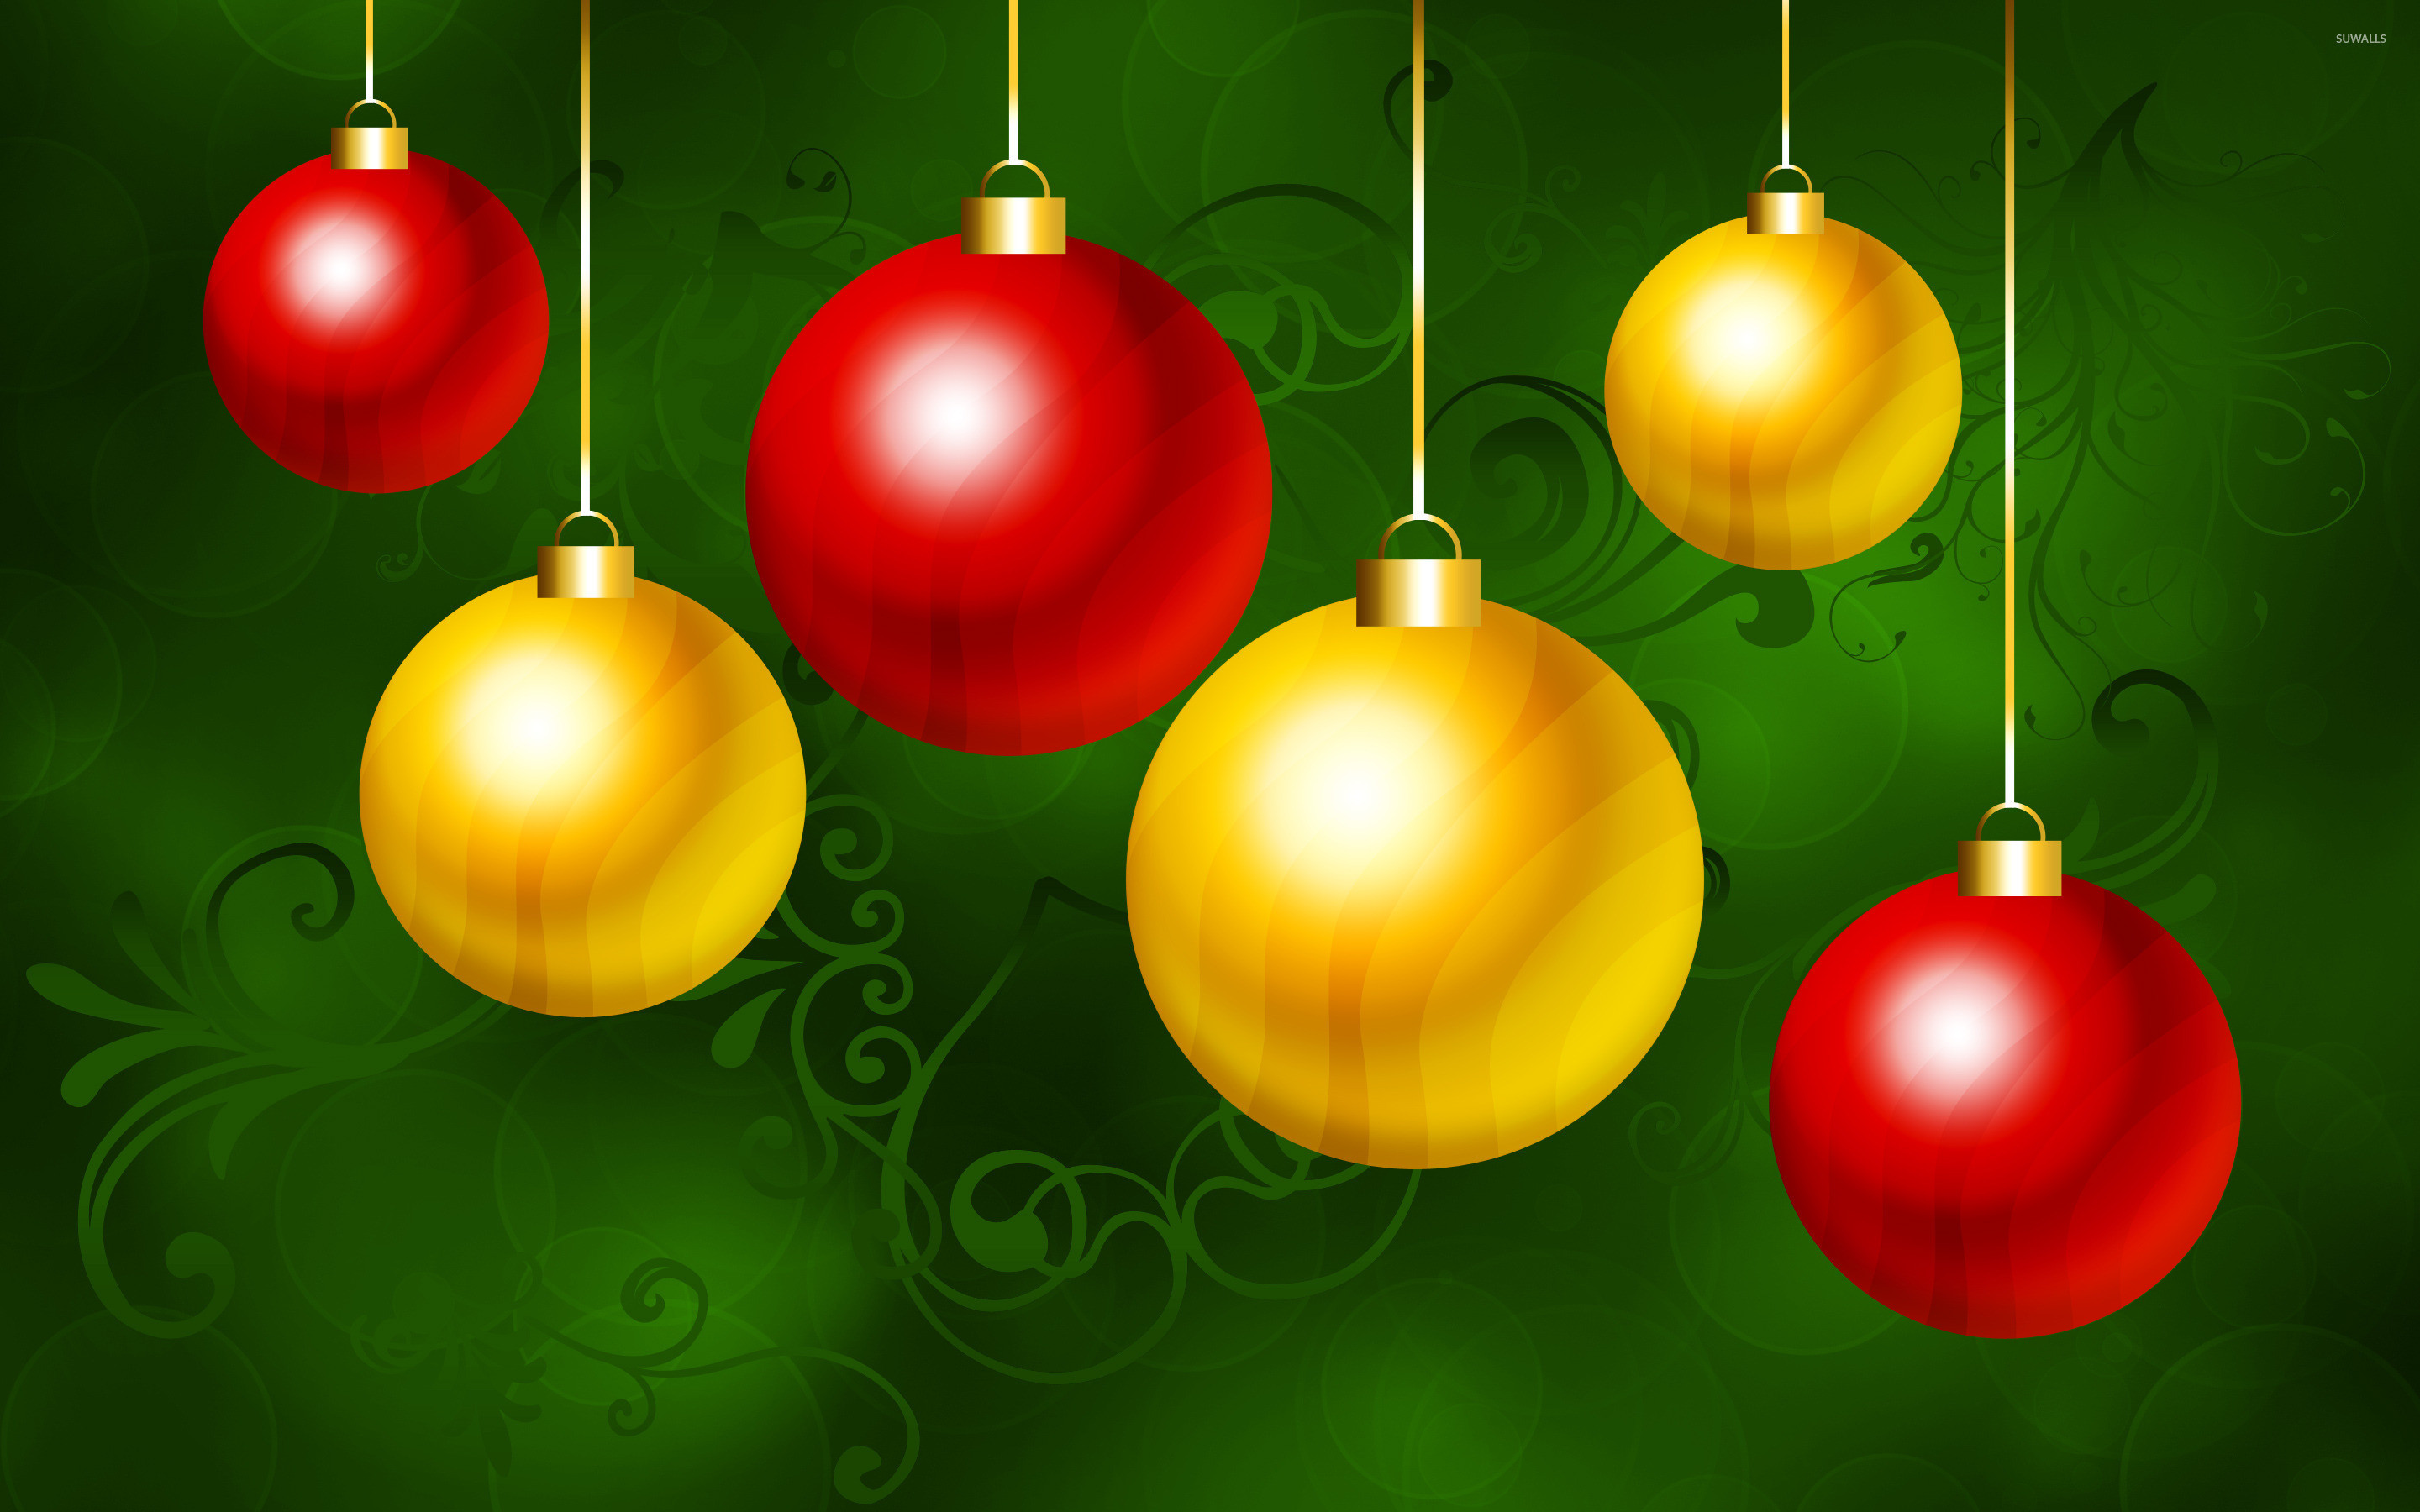 papel tapiz de adorno de navidad,decoración navideña,decoración navideña,verde,adorno de vacaciones,ornamento